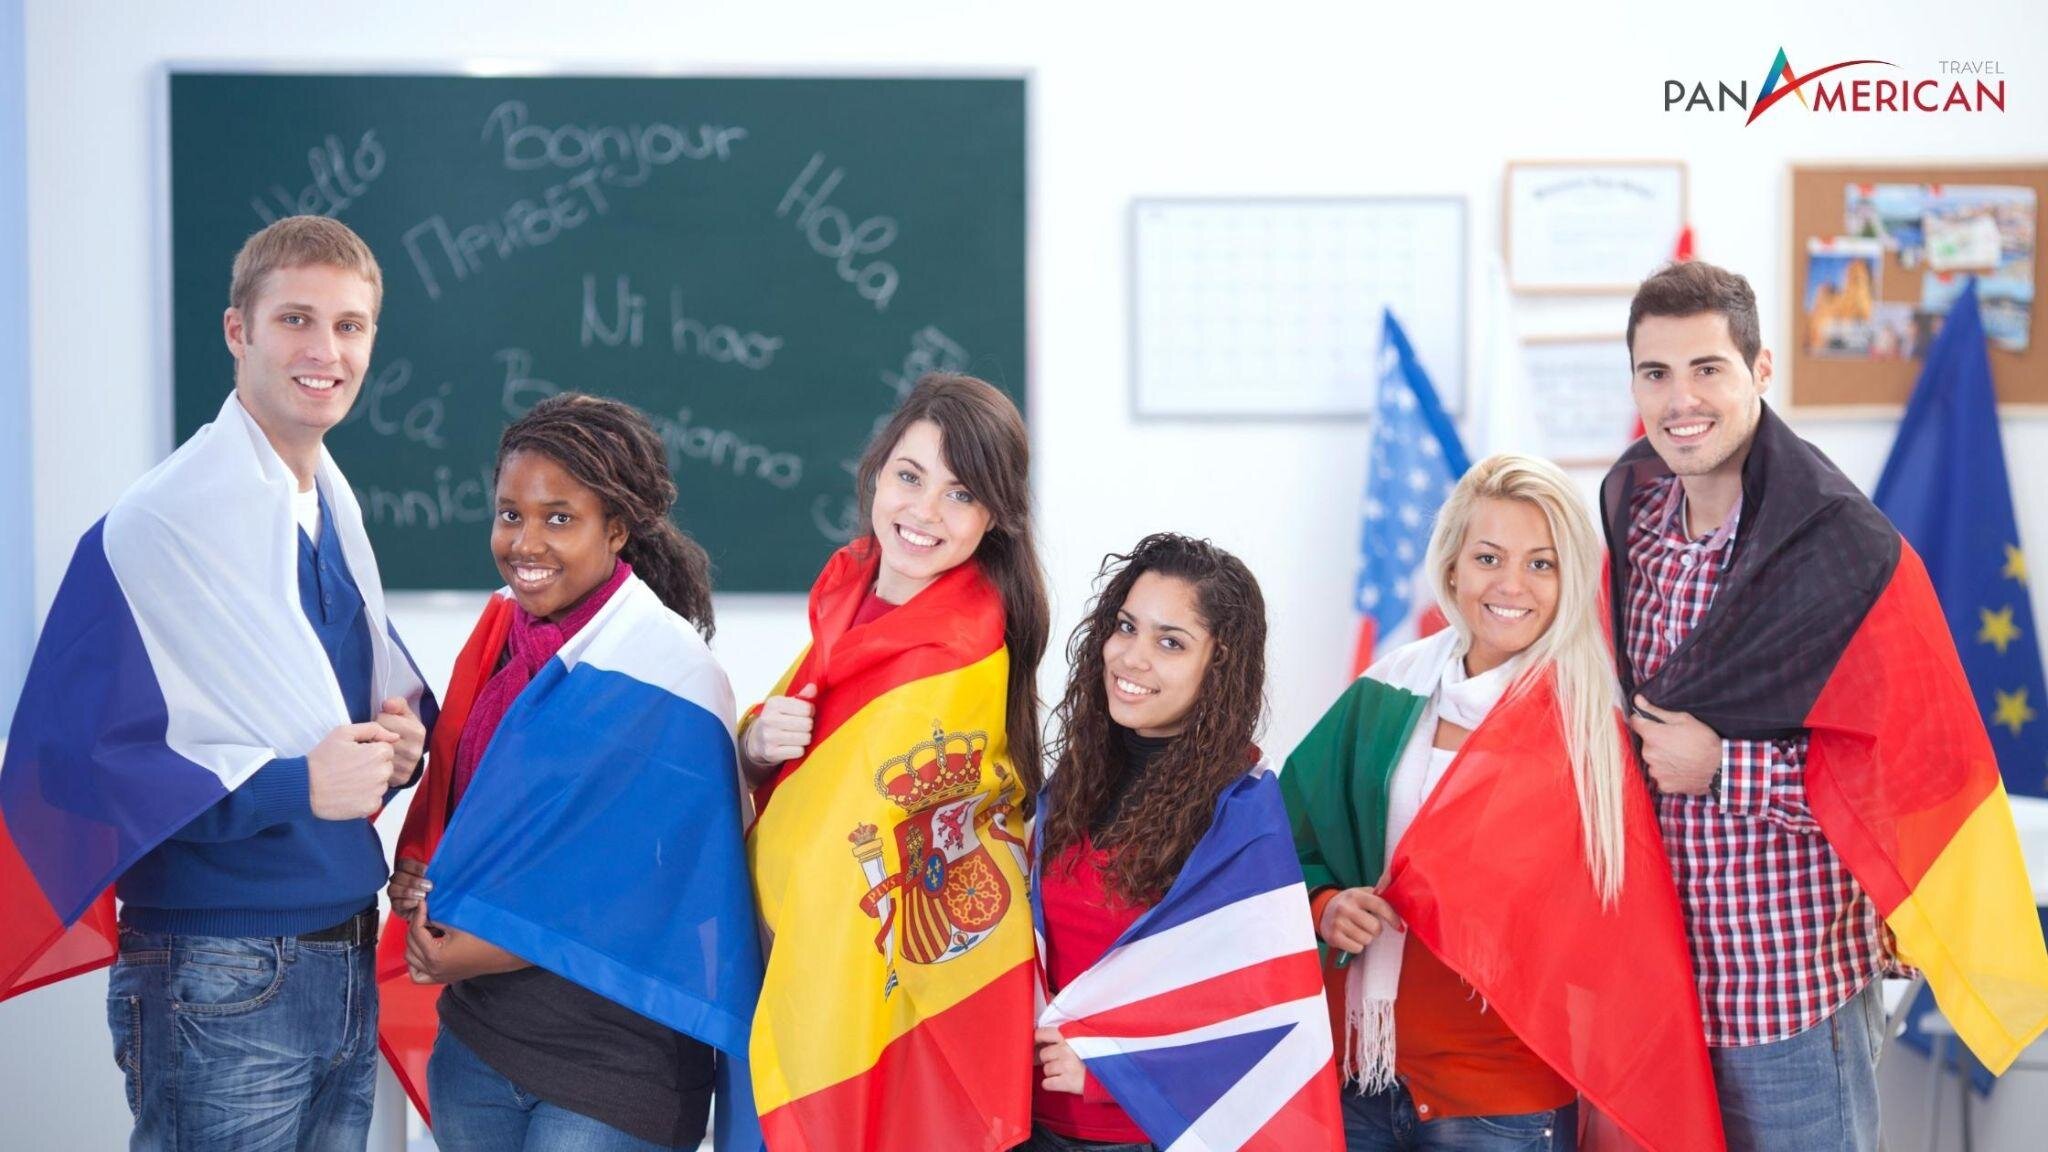 Tiếng Anh, Tây Ban Nha, Bồ Đào Nha,... là những ngôn ngữ được dùng nhiều tại Mỹ